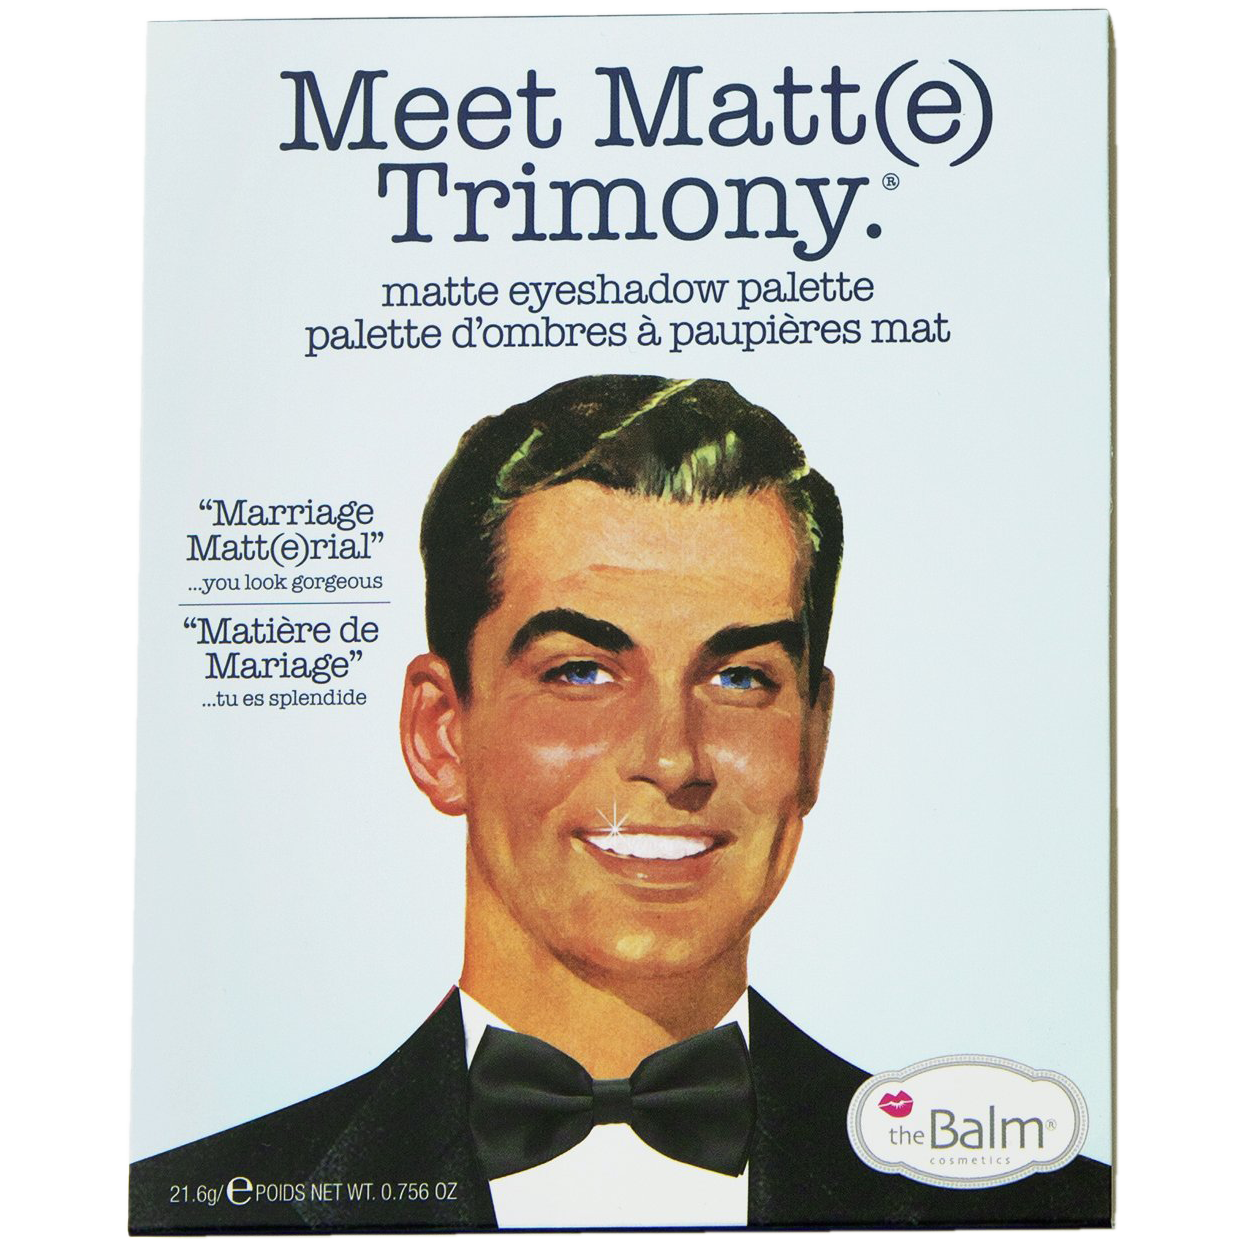 The Balm Meet Matt(e) Trimony палетка теней для век, 21,6 г